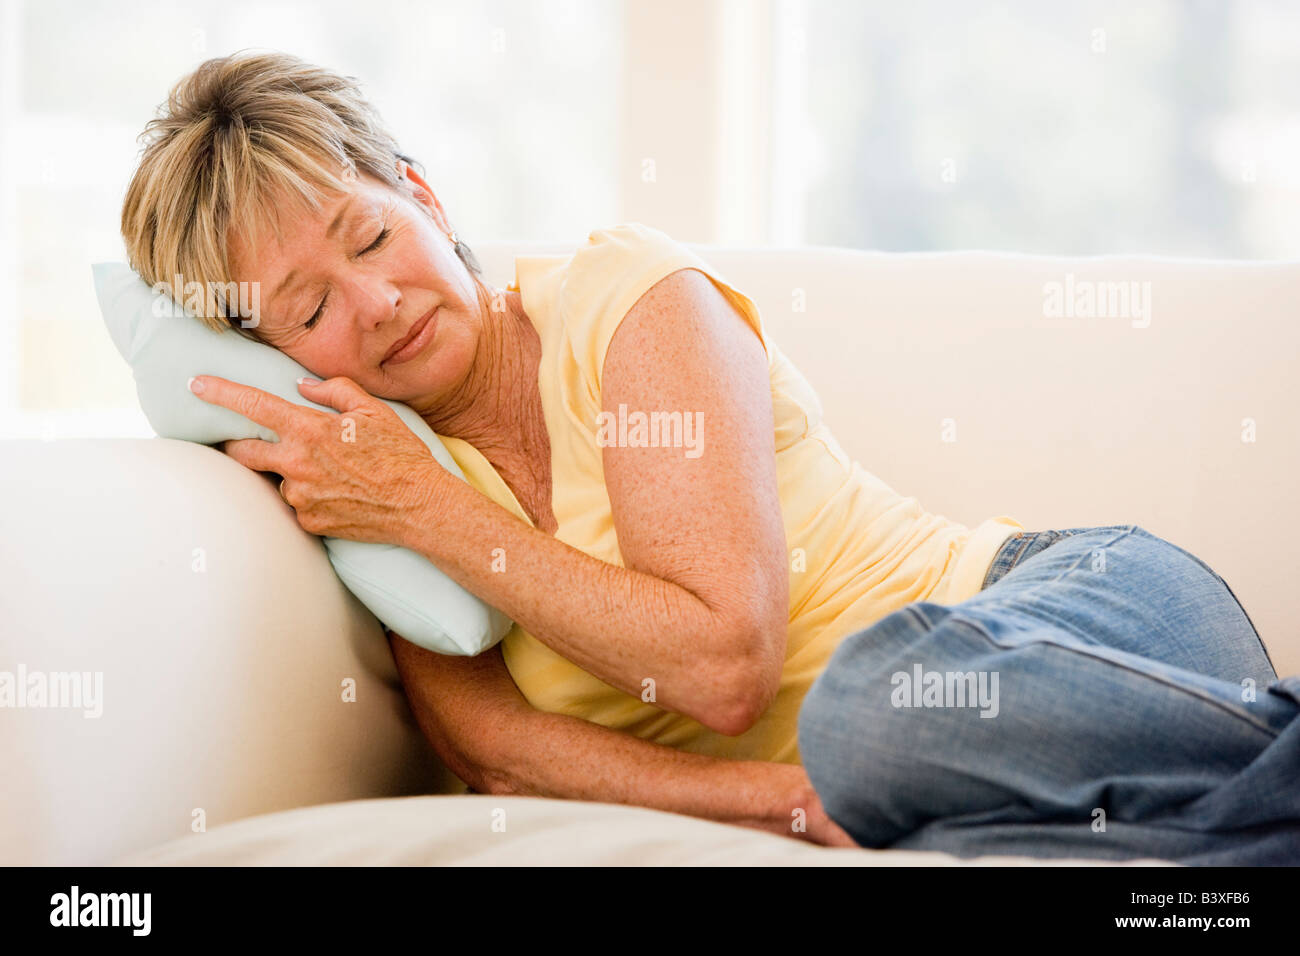 Woman Feeling Unwell Stock Photo